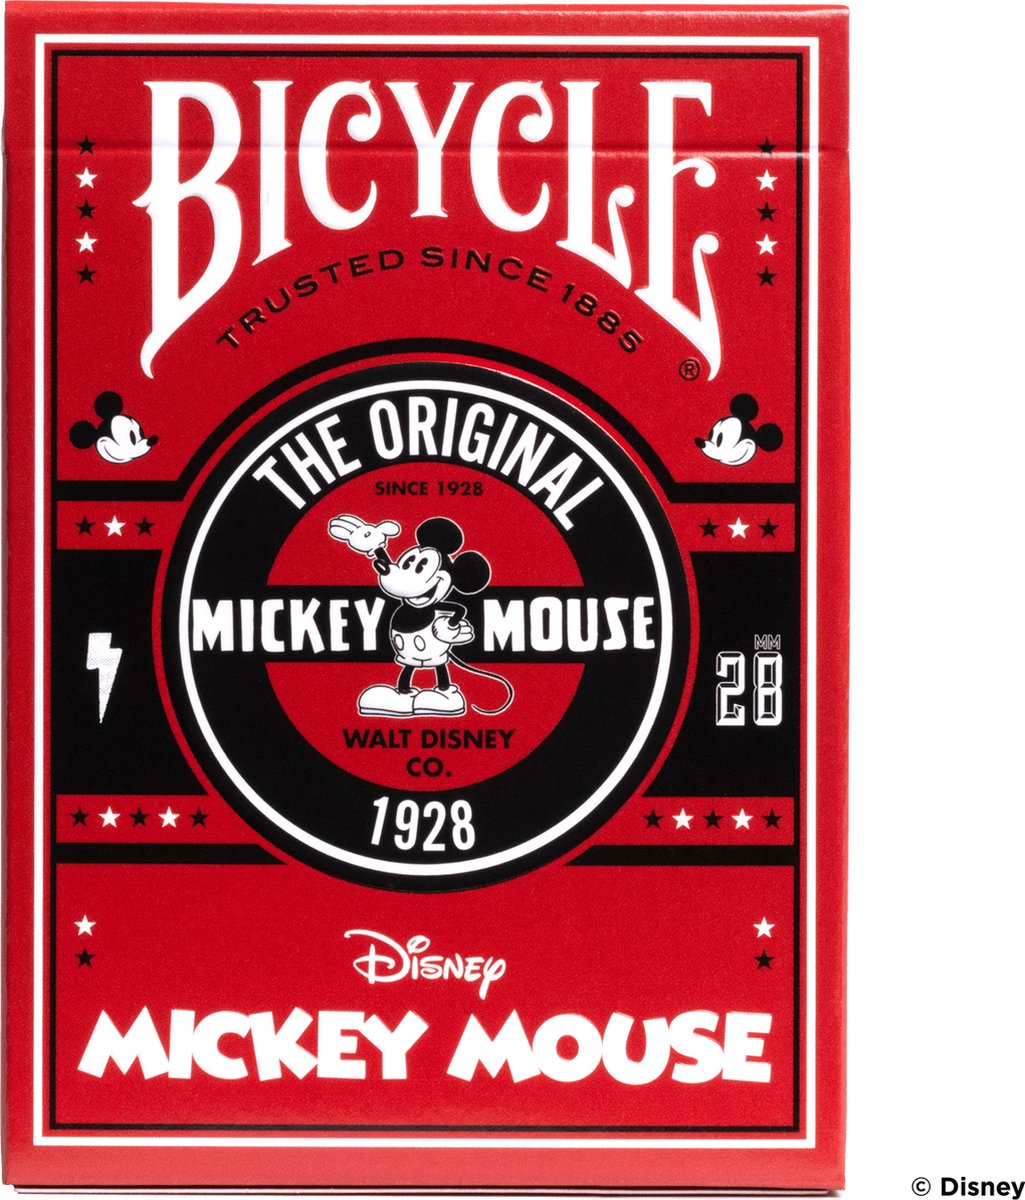 BICYCLE® CLASSIC MICKEY - Speelkaarten - Premium - Poker - Creative Collectie